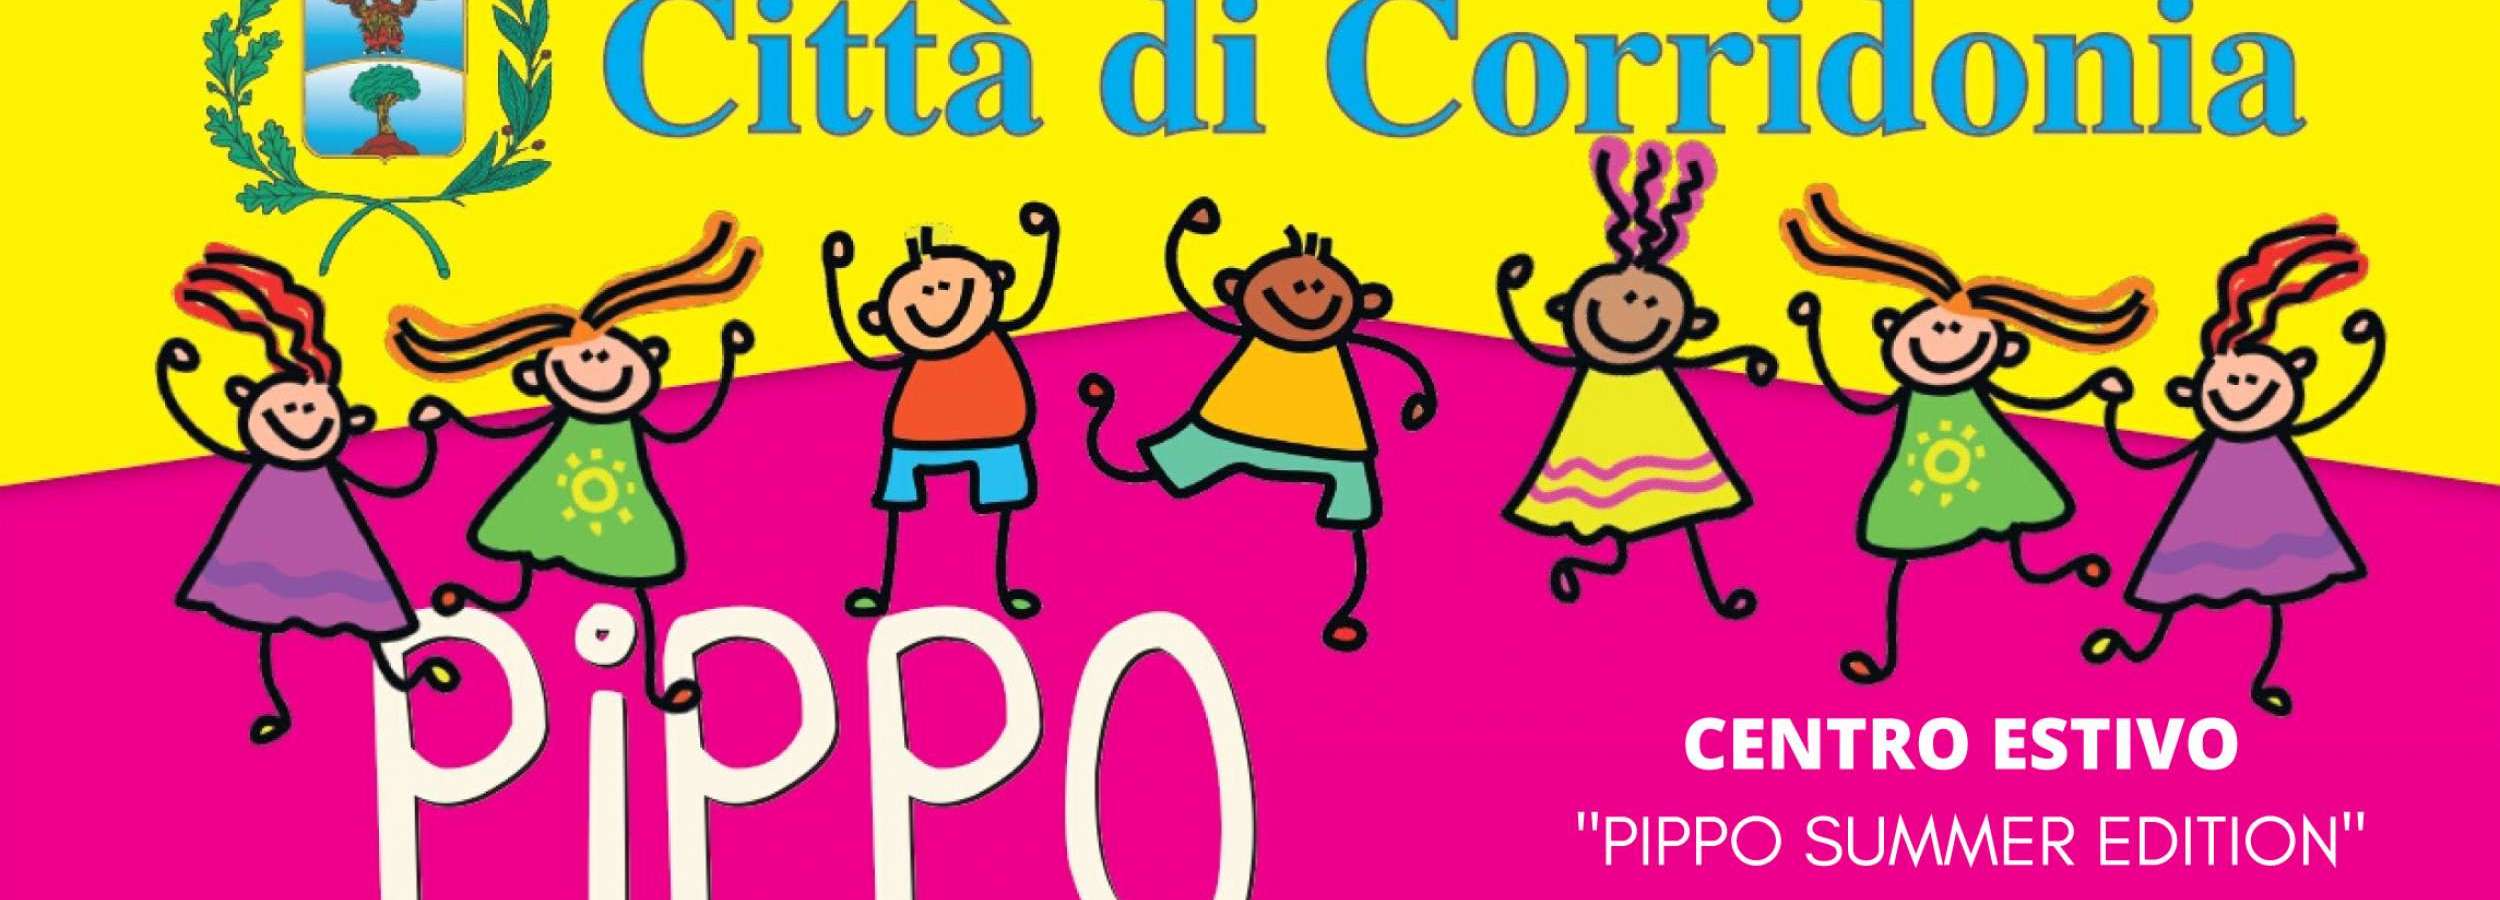 Centro estivo Pippo summer edition Città di Corridonia